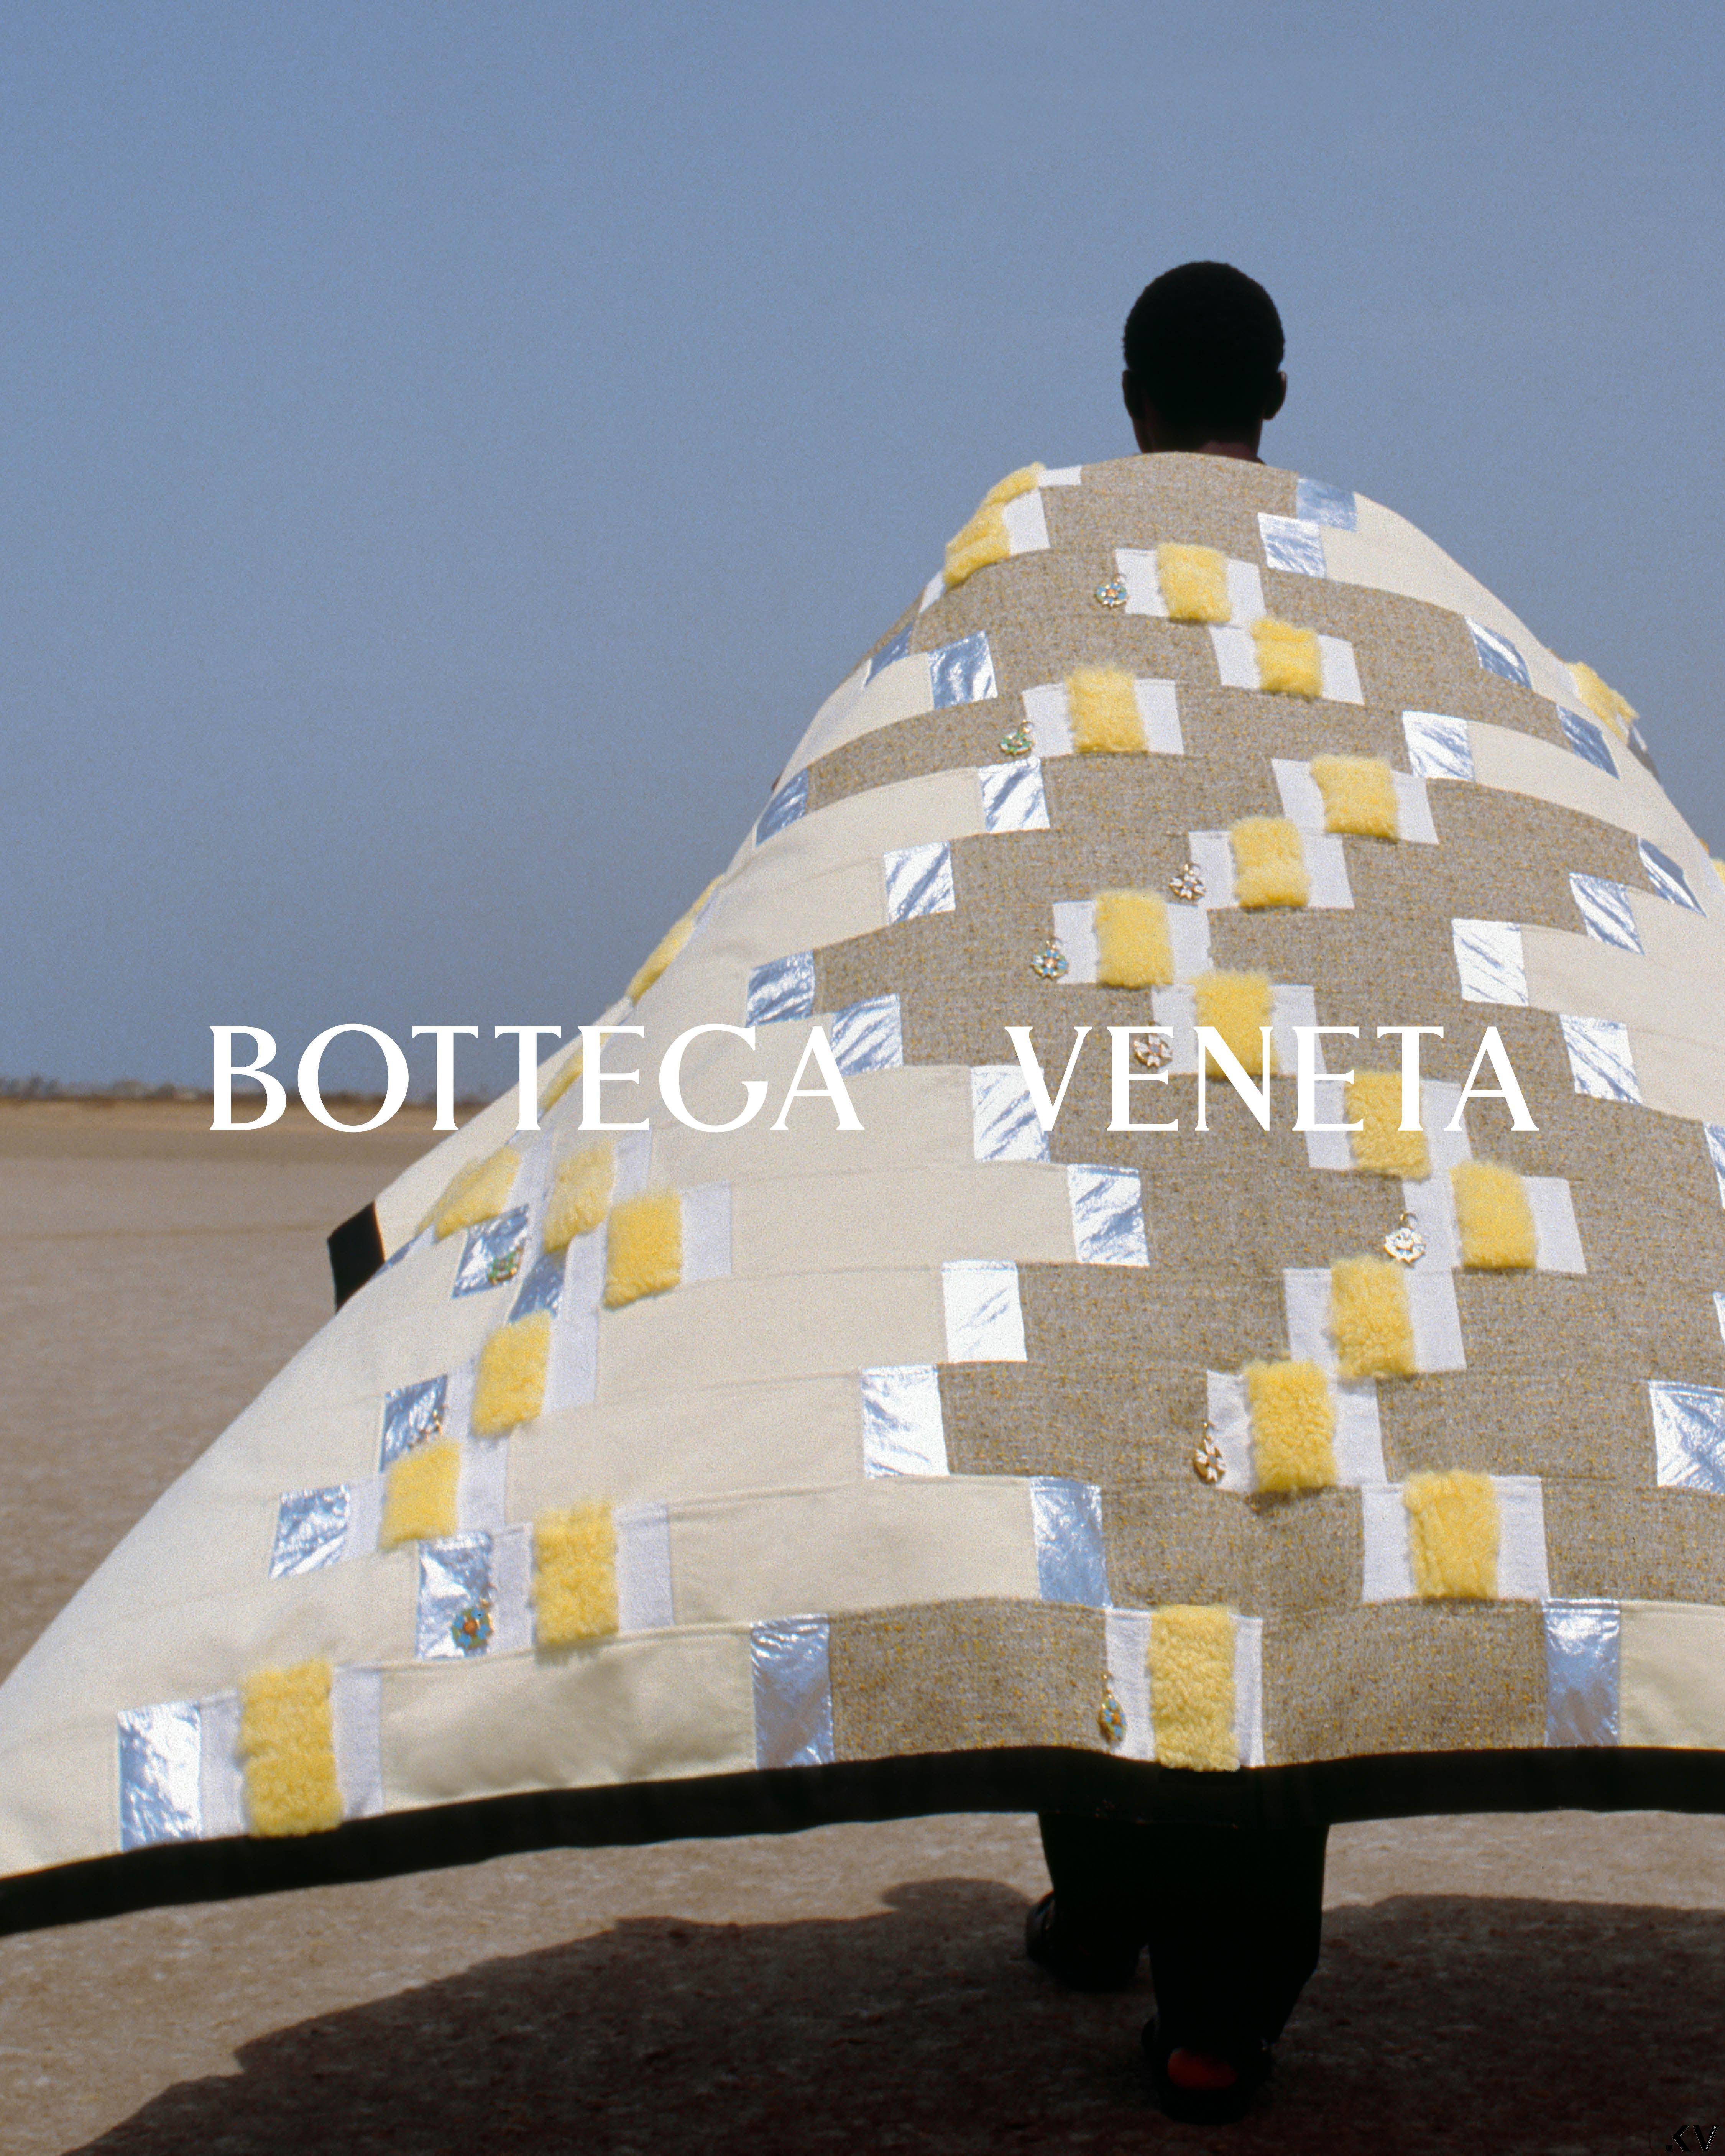 Bottega Veneta合作非洲航空还打造限量毛毯？　让人拍手的全新计划曝光 时尚穿搭 图5张